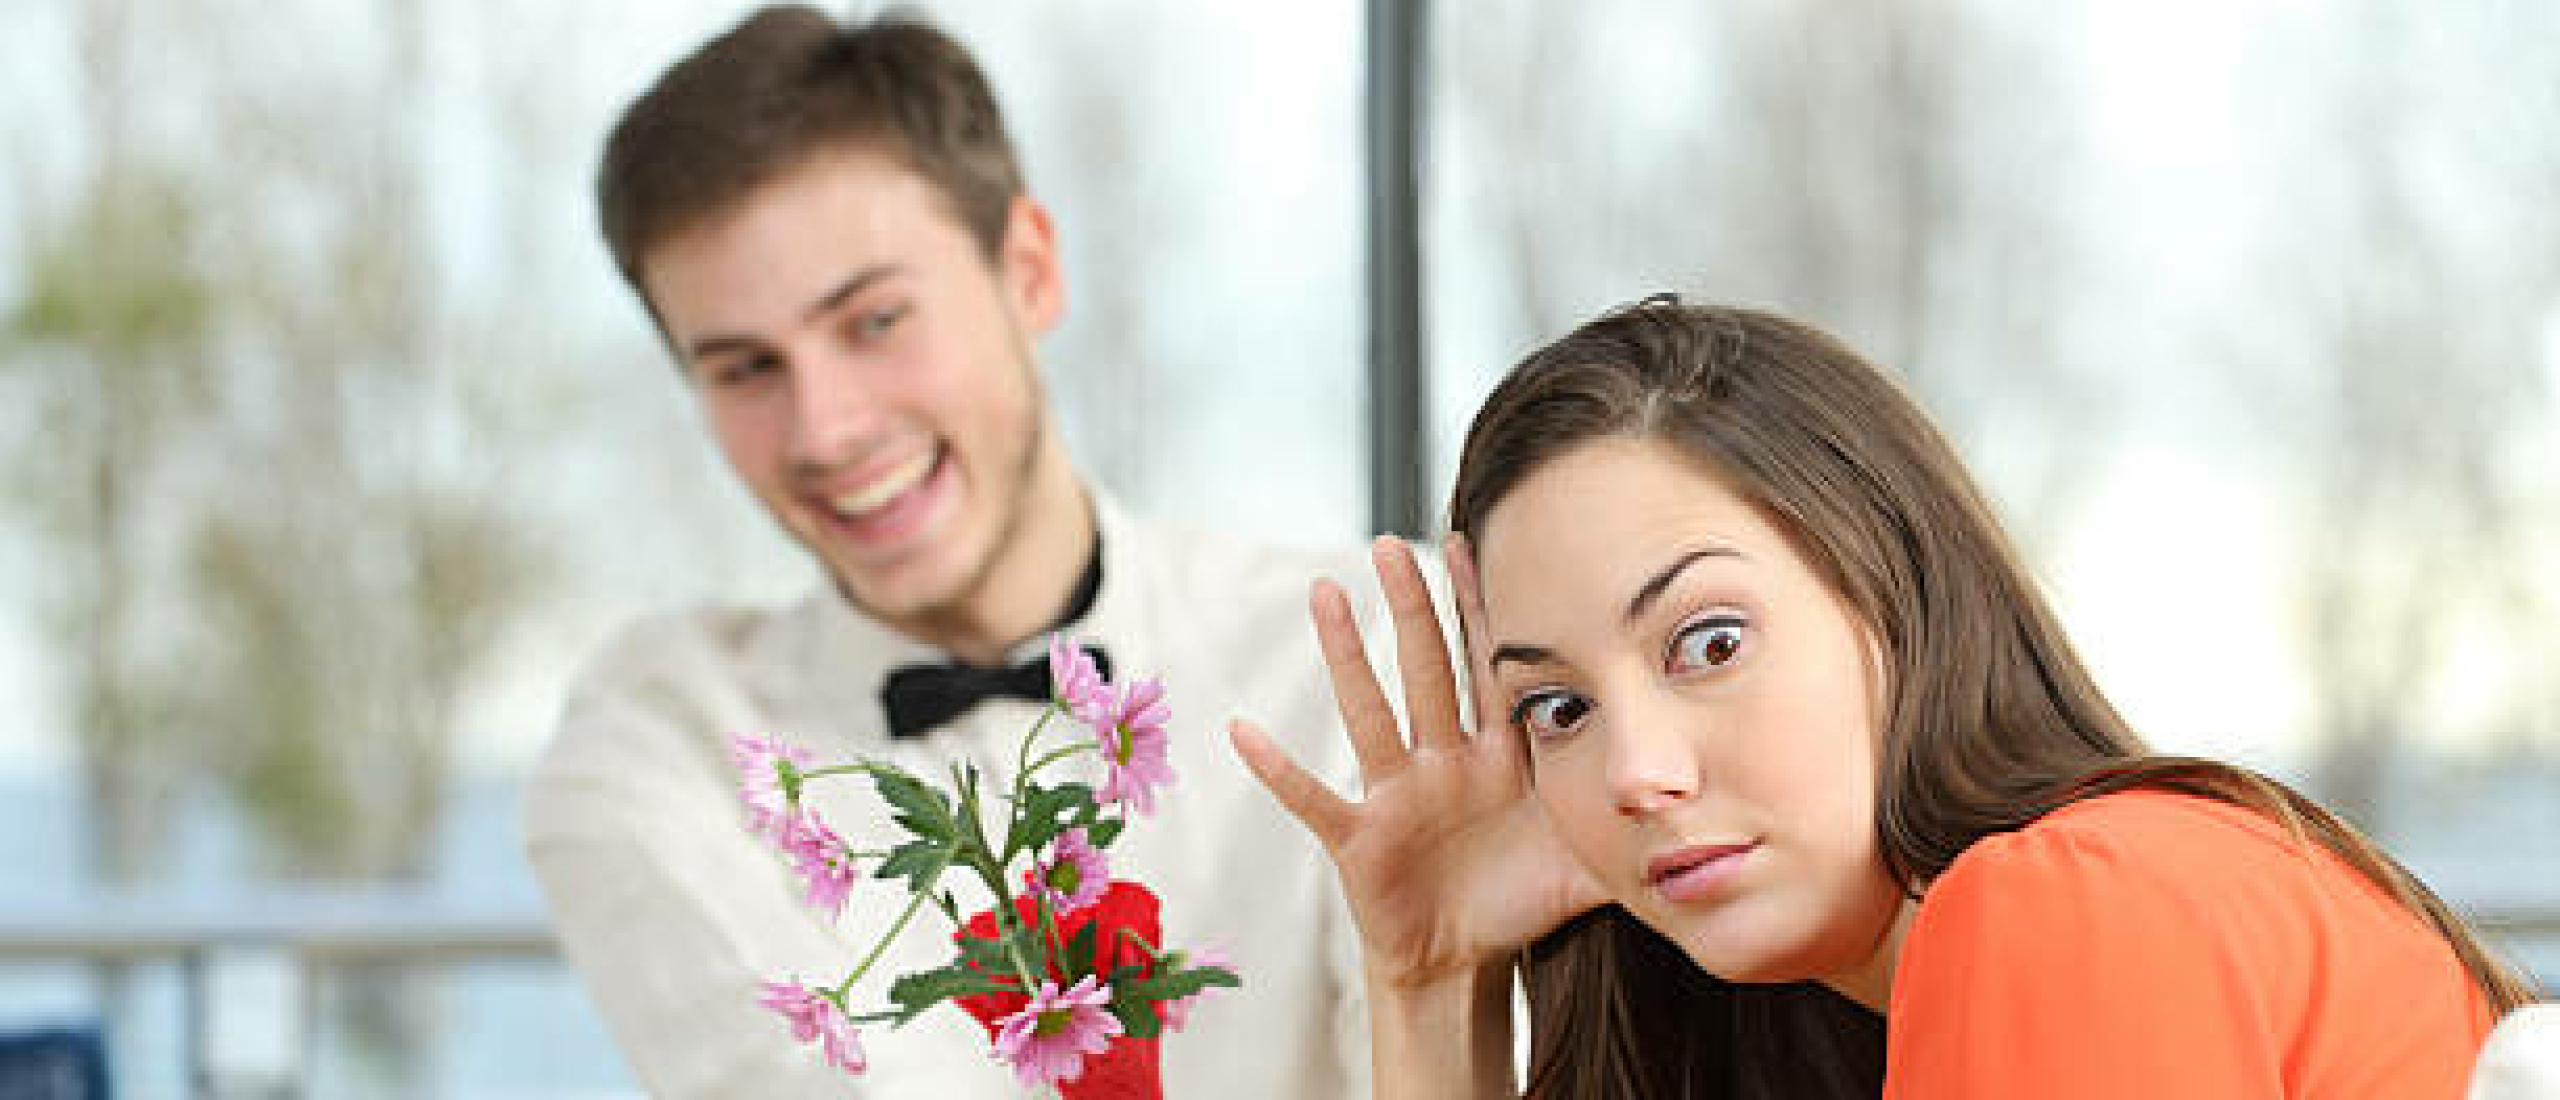 Over-enthousiasme van een man op een date, wat doet dat met een vrouw?